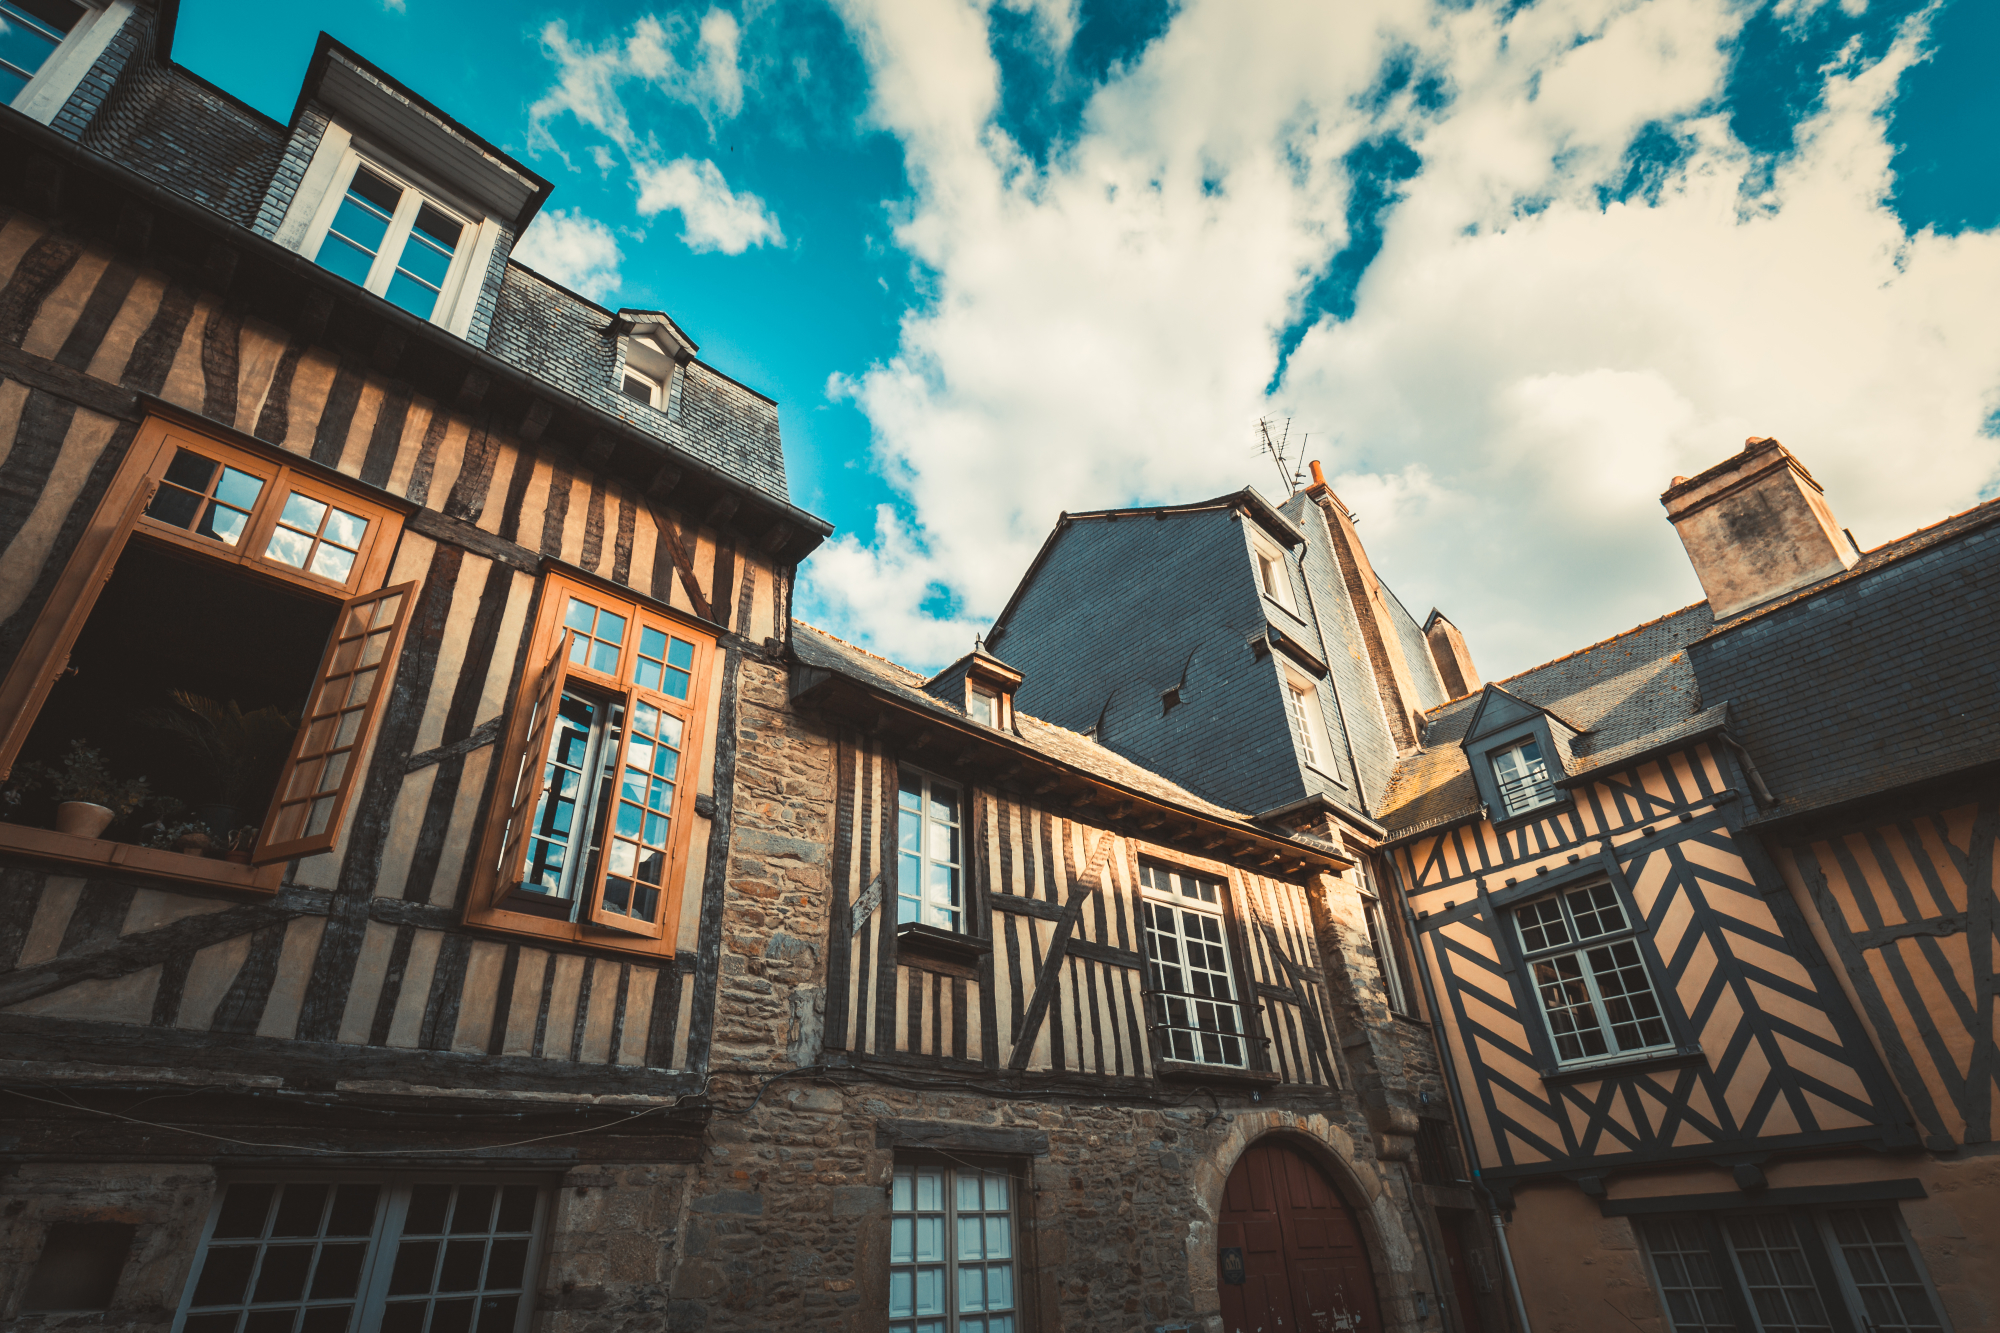 Maisons à colombages traditionnelles de Rennes